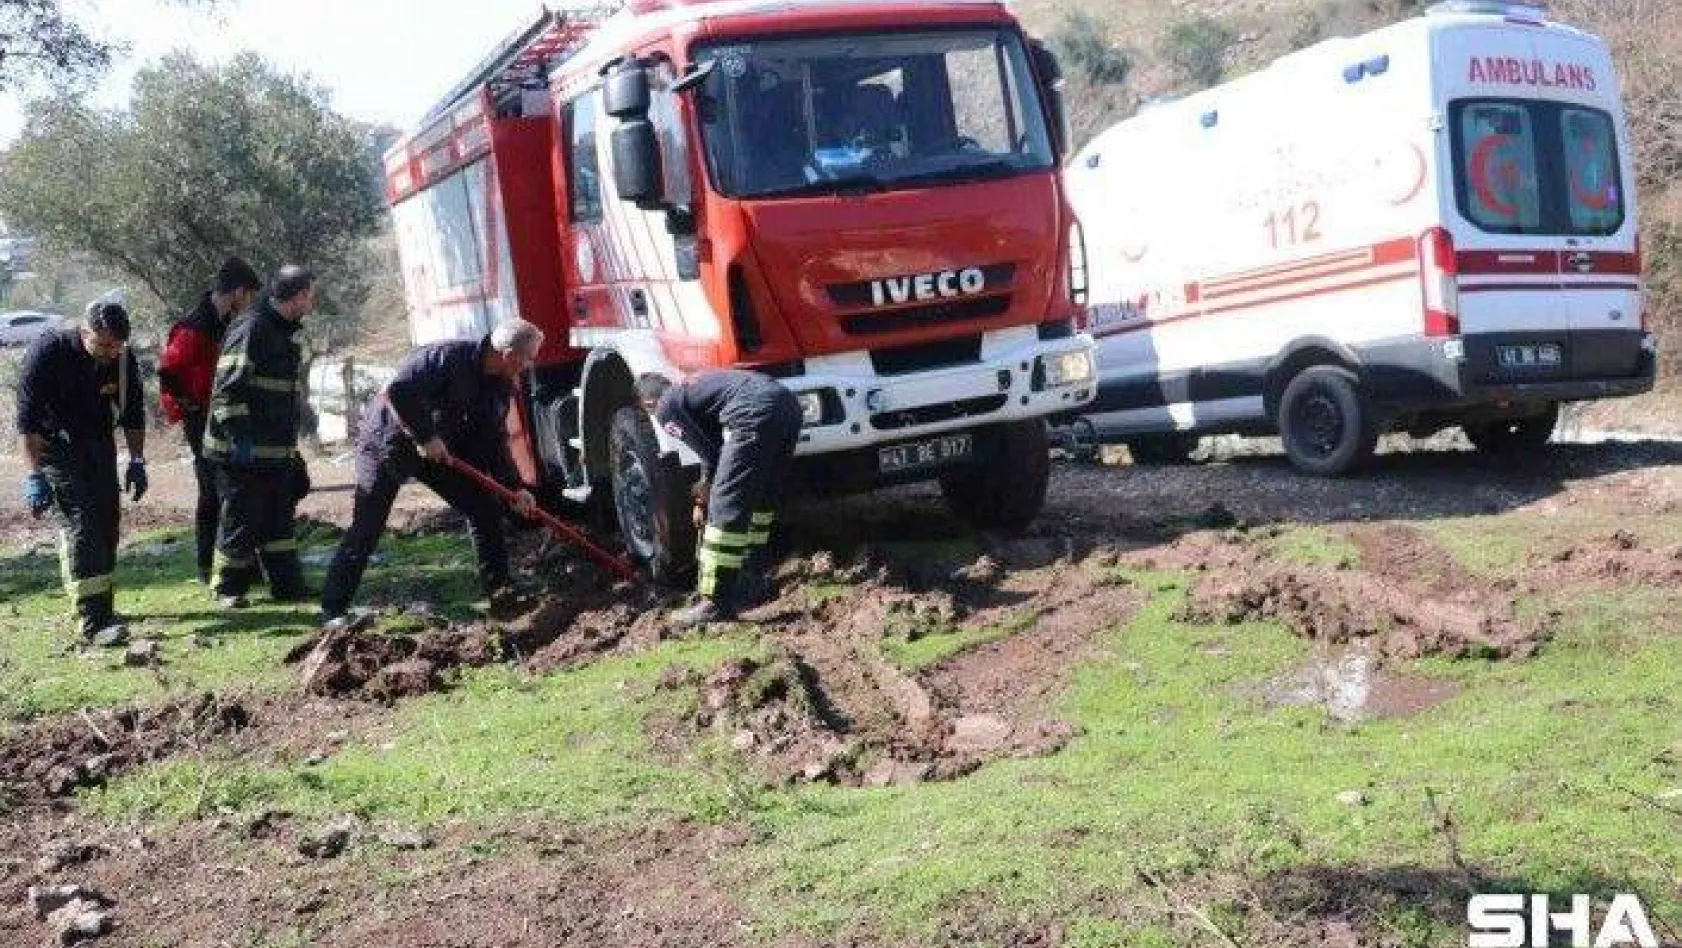 Hem ambulans hem de kurtarmak için gelen itfaiye aracı çamura saplandı